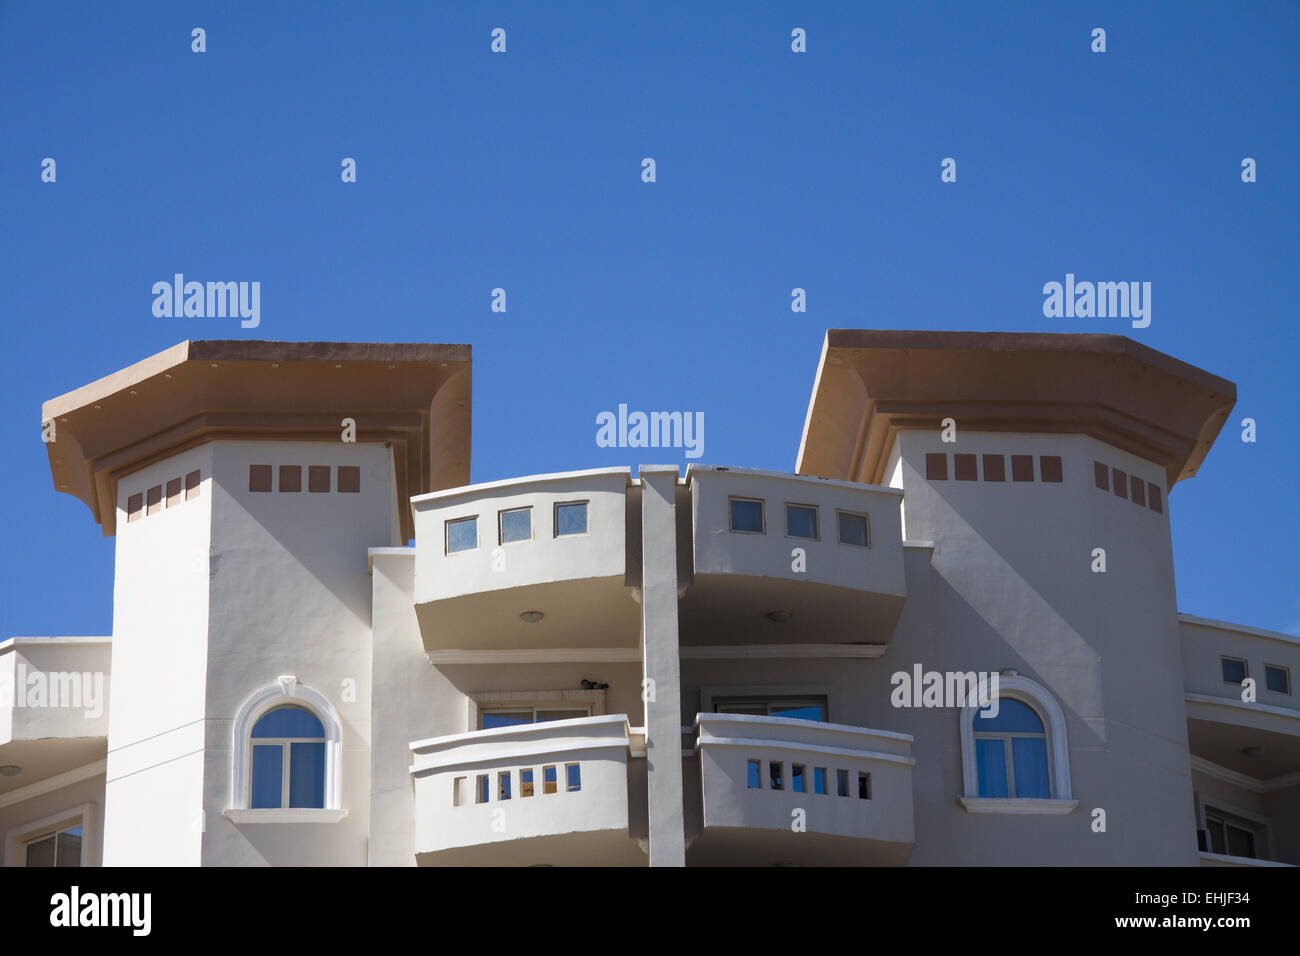 Egyptian apartment house Stock Photo